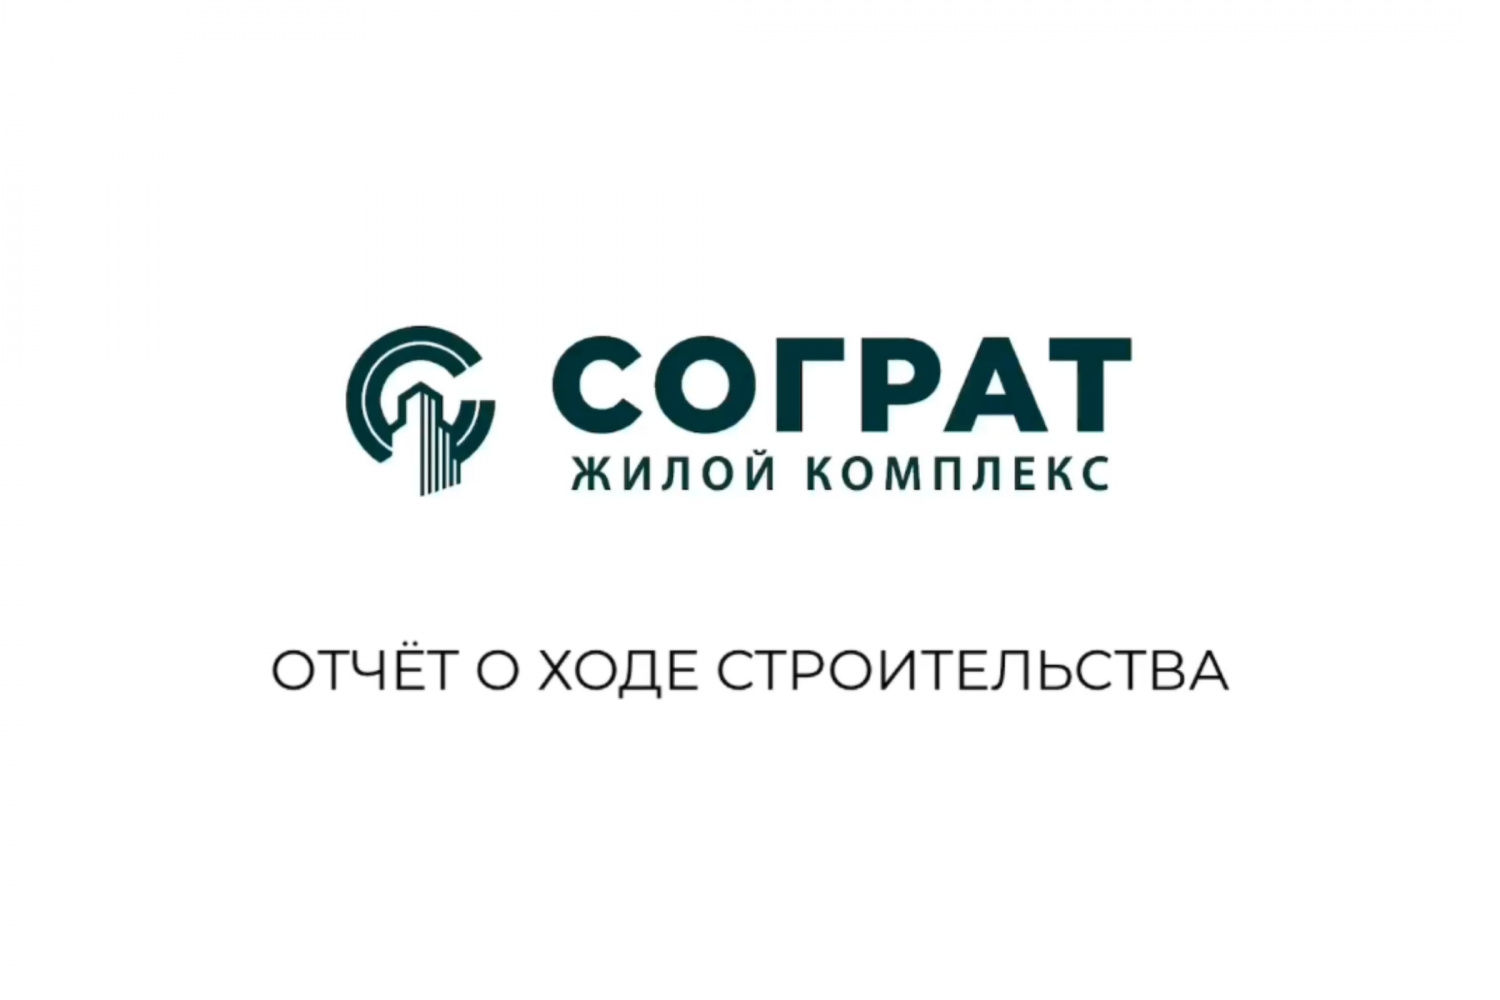 Отчёт о ходе строительства ЖК "Сограт" от 29.04.2020